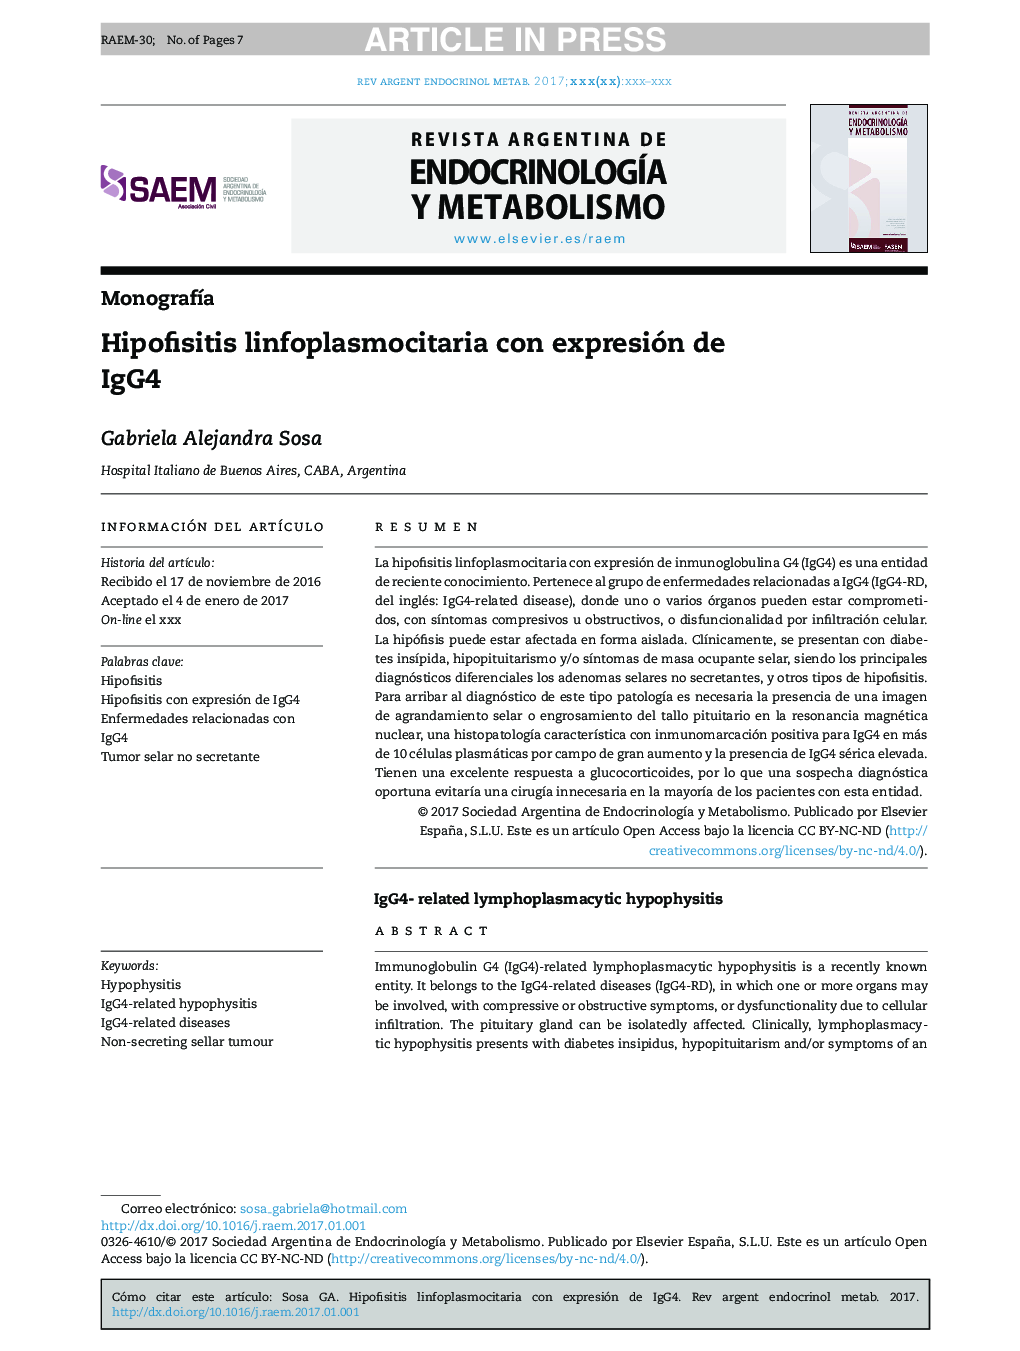 Hipofisitis linfoplasmocitaria con expresión de IgG4